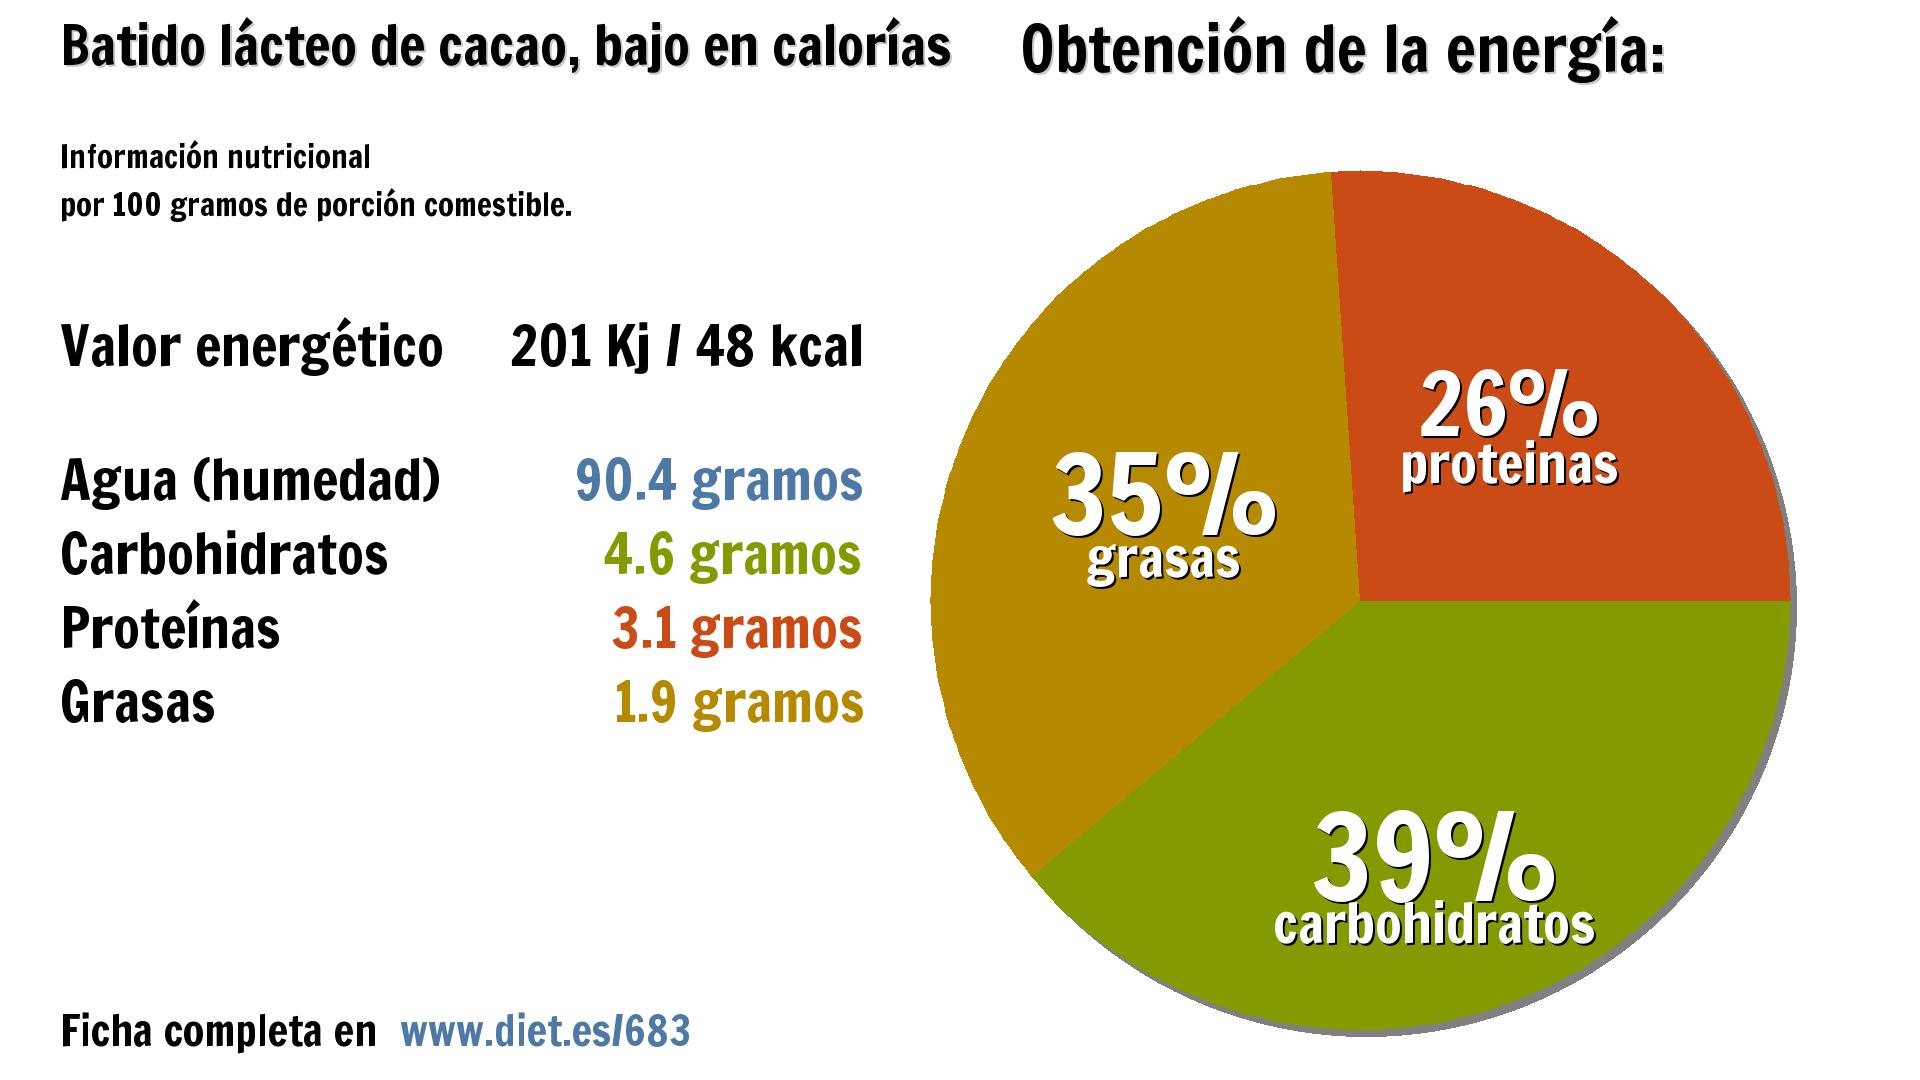 Batido lácteo de cacao, bajo en calorías: energía 201 Kj, agua 90 g., carbohidratos 5 g., proteínas 3 g. y grasas 2 g.